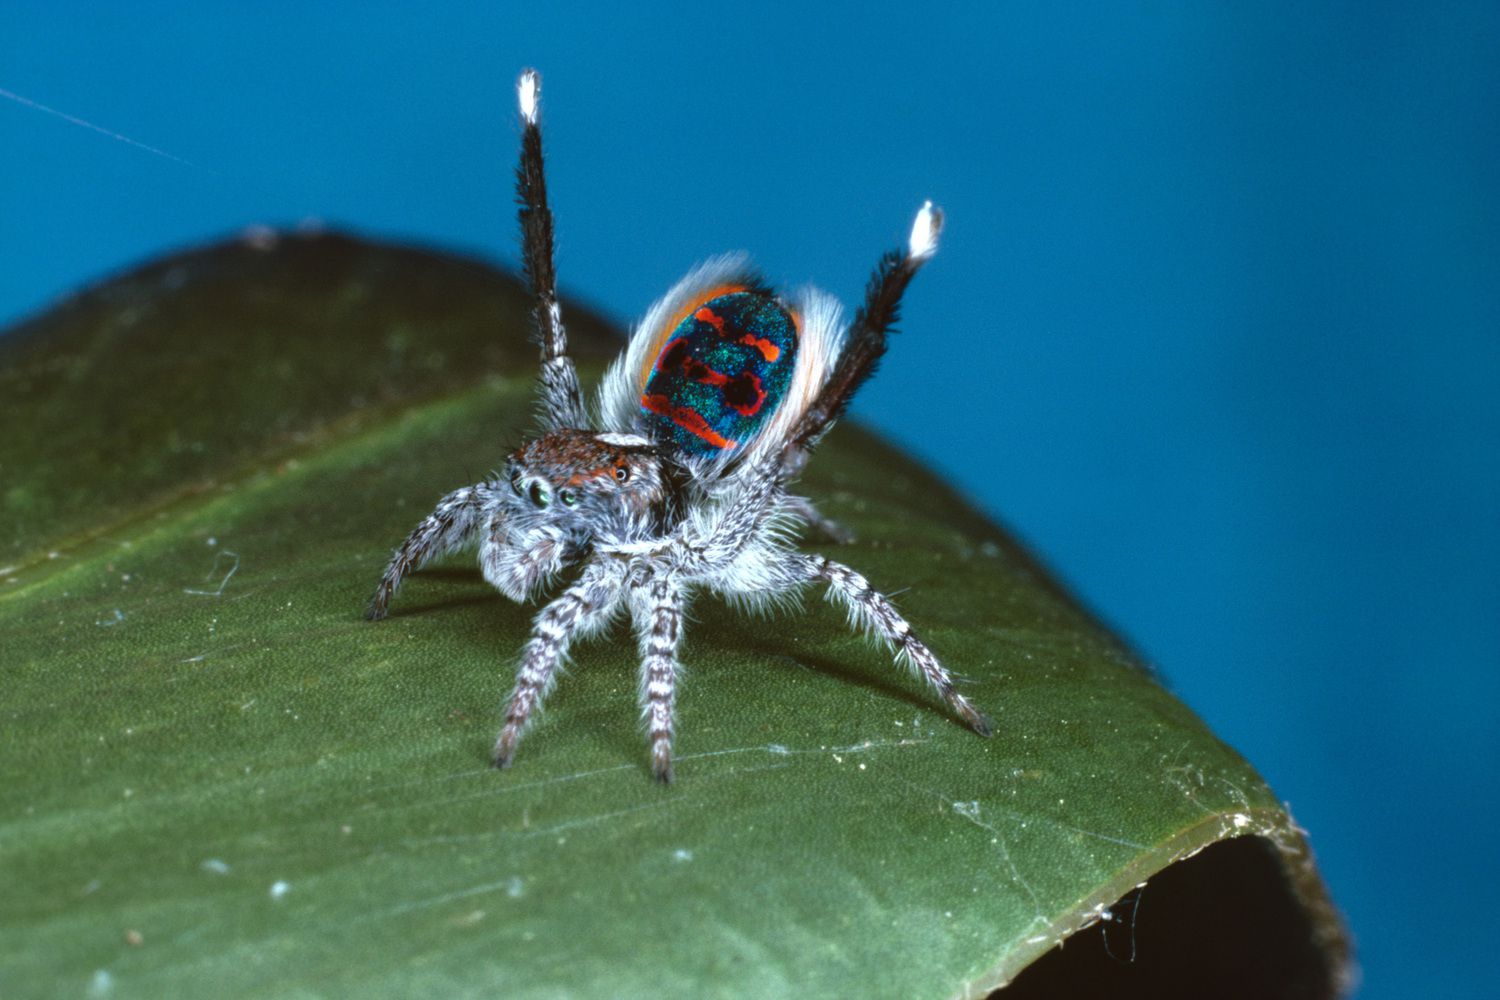 Habitat Of Peacock Spider